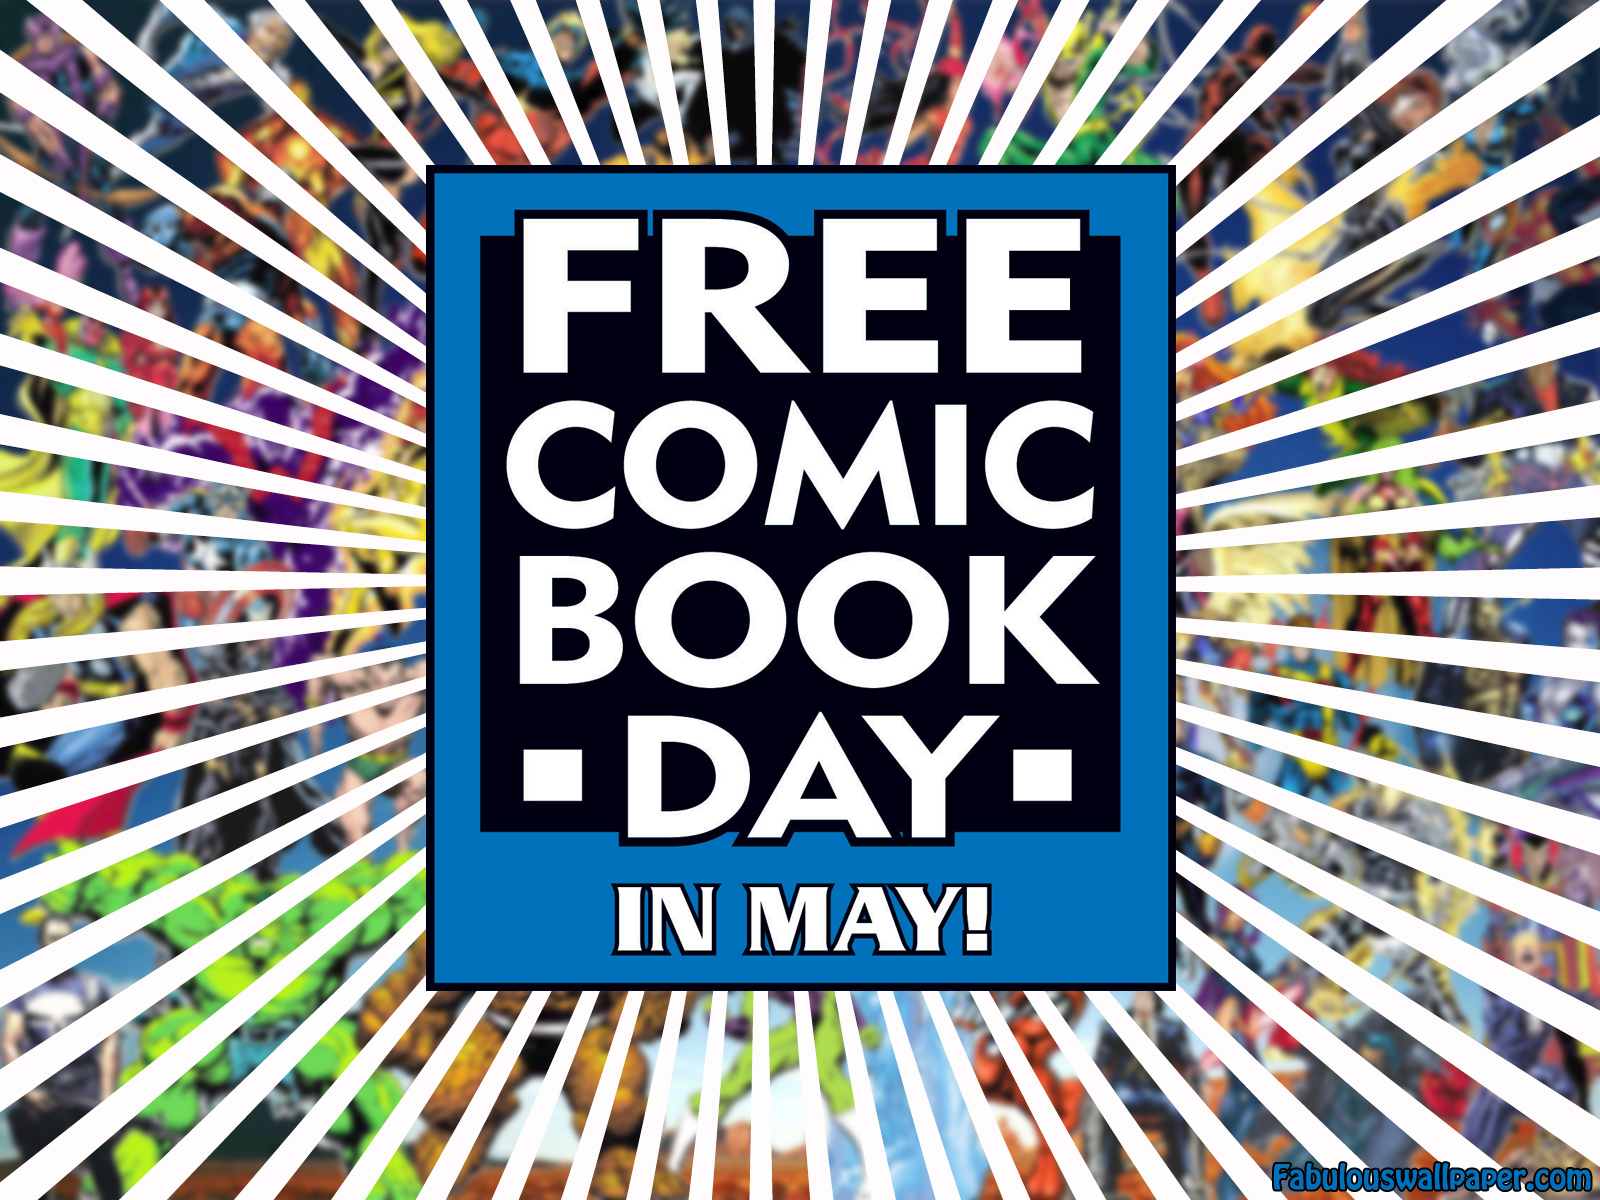 Free comic book day 2015